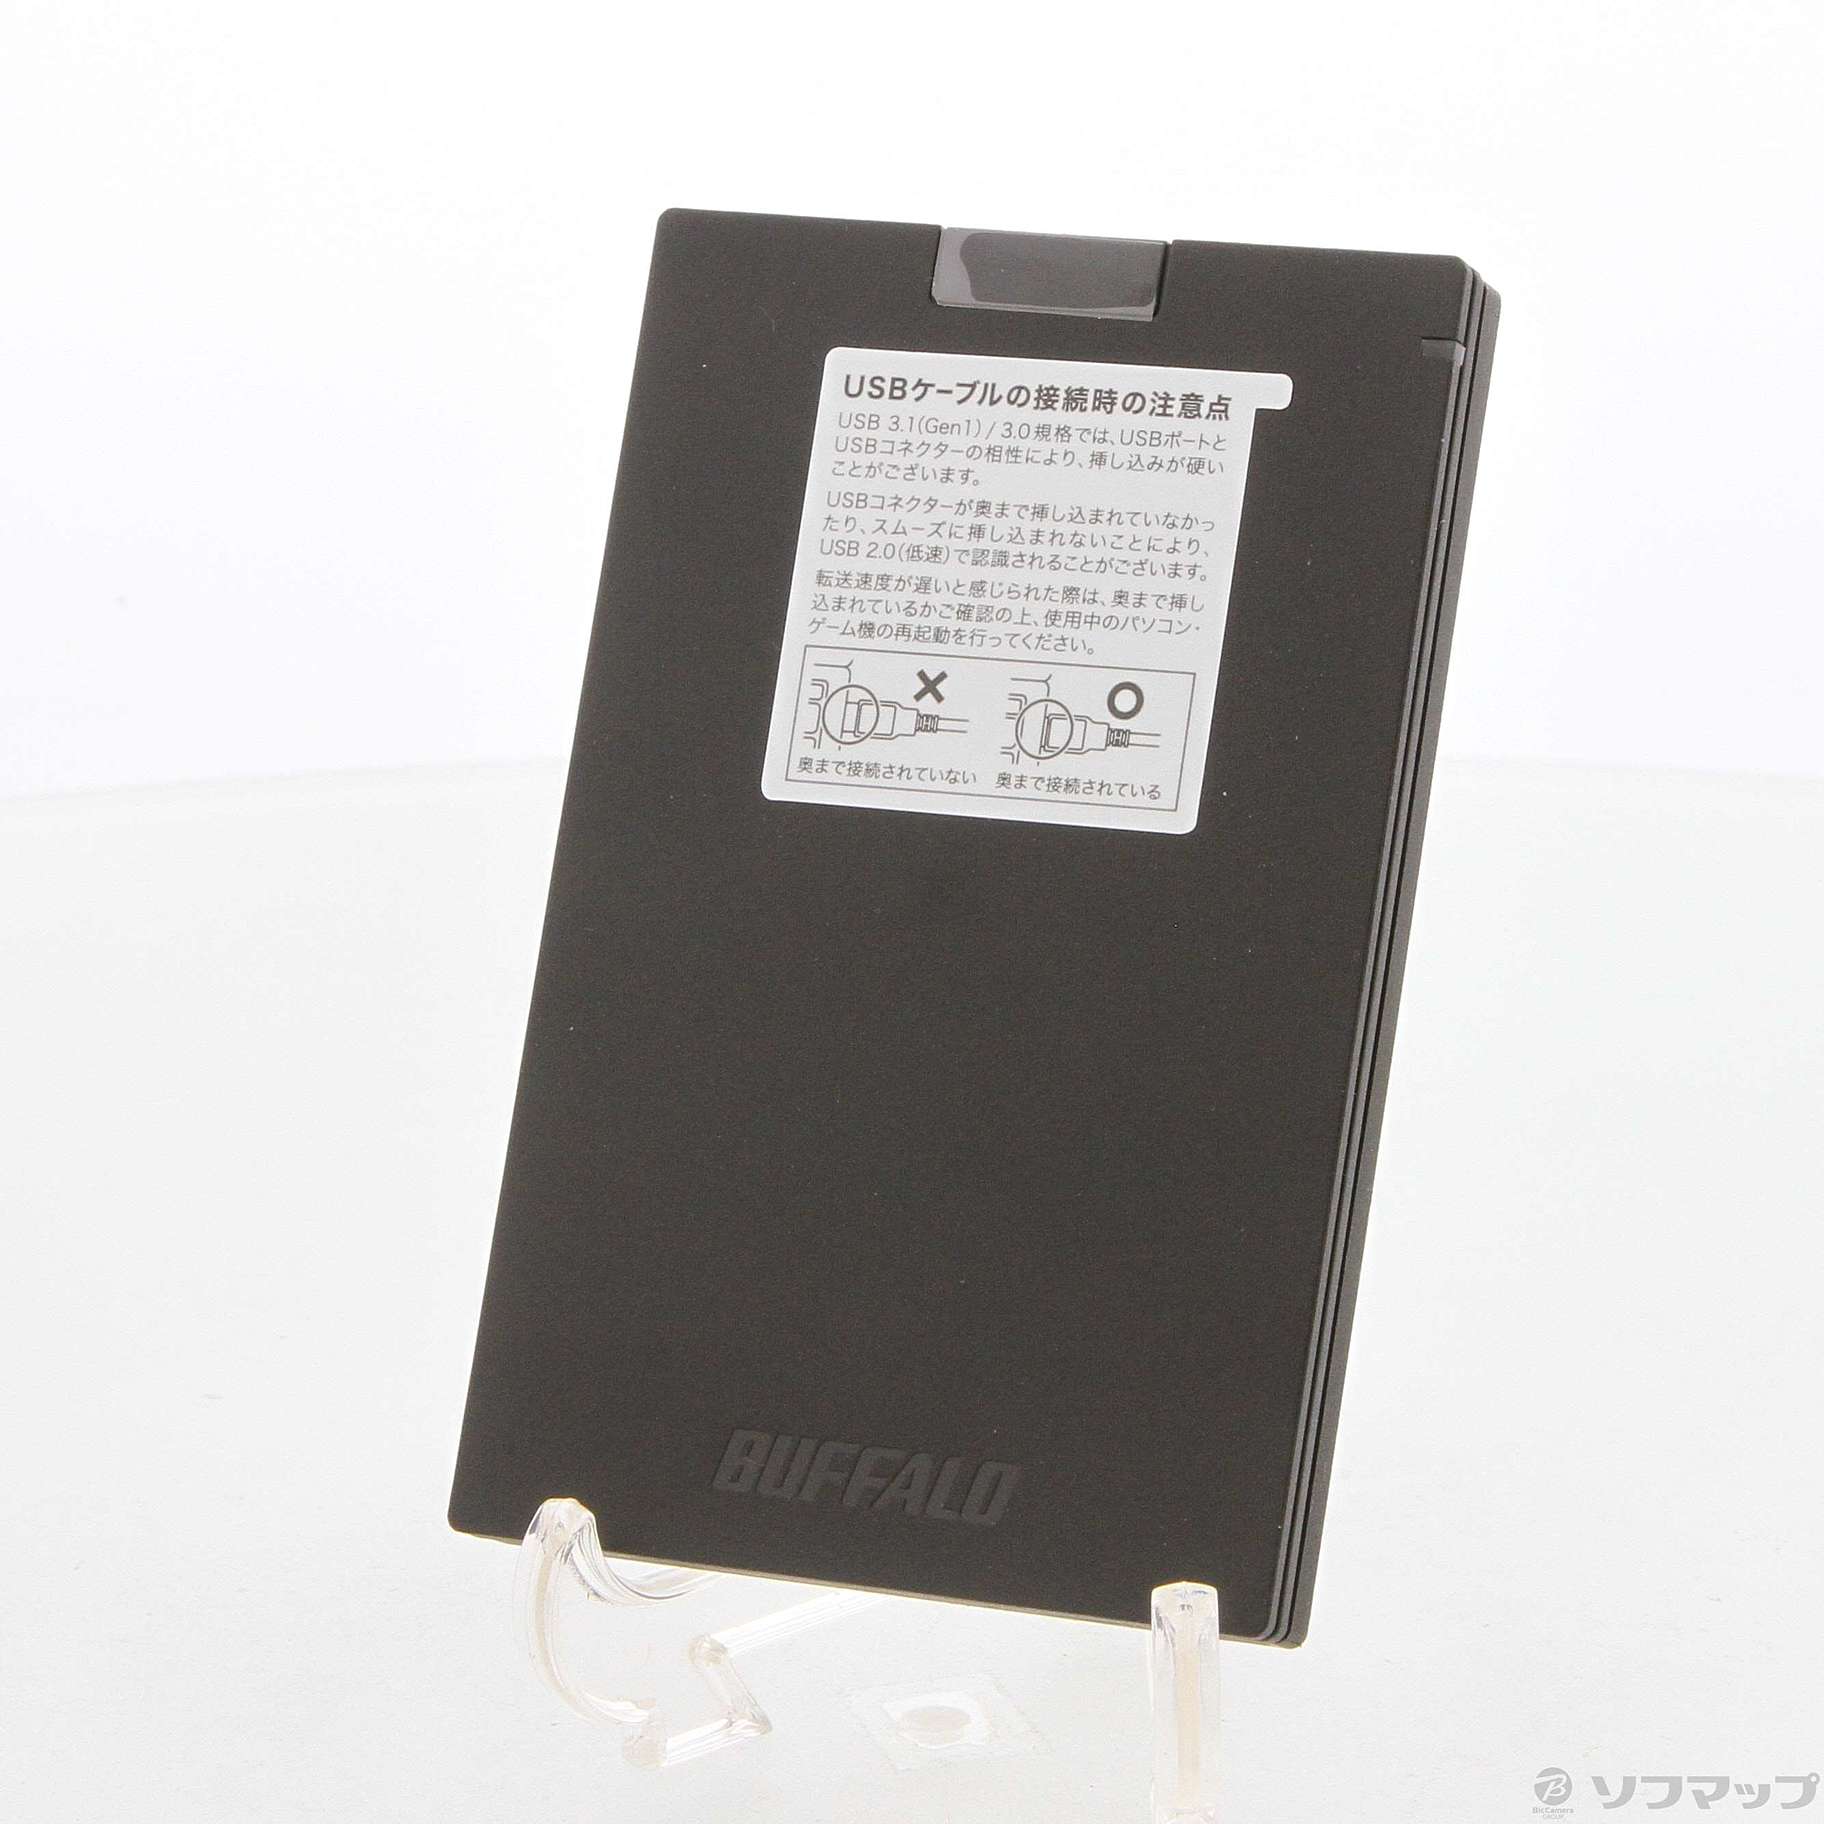 【新品未開封】SSD 960GB BUFFALO SSD-PG960U3-BA